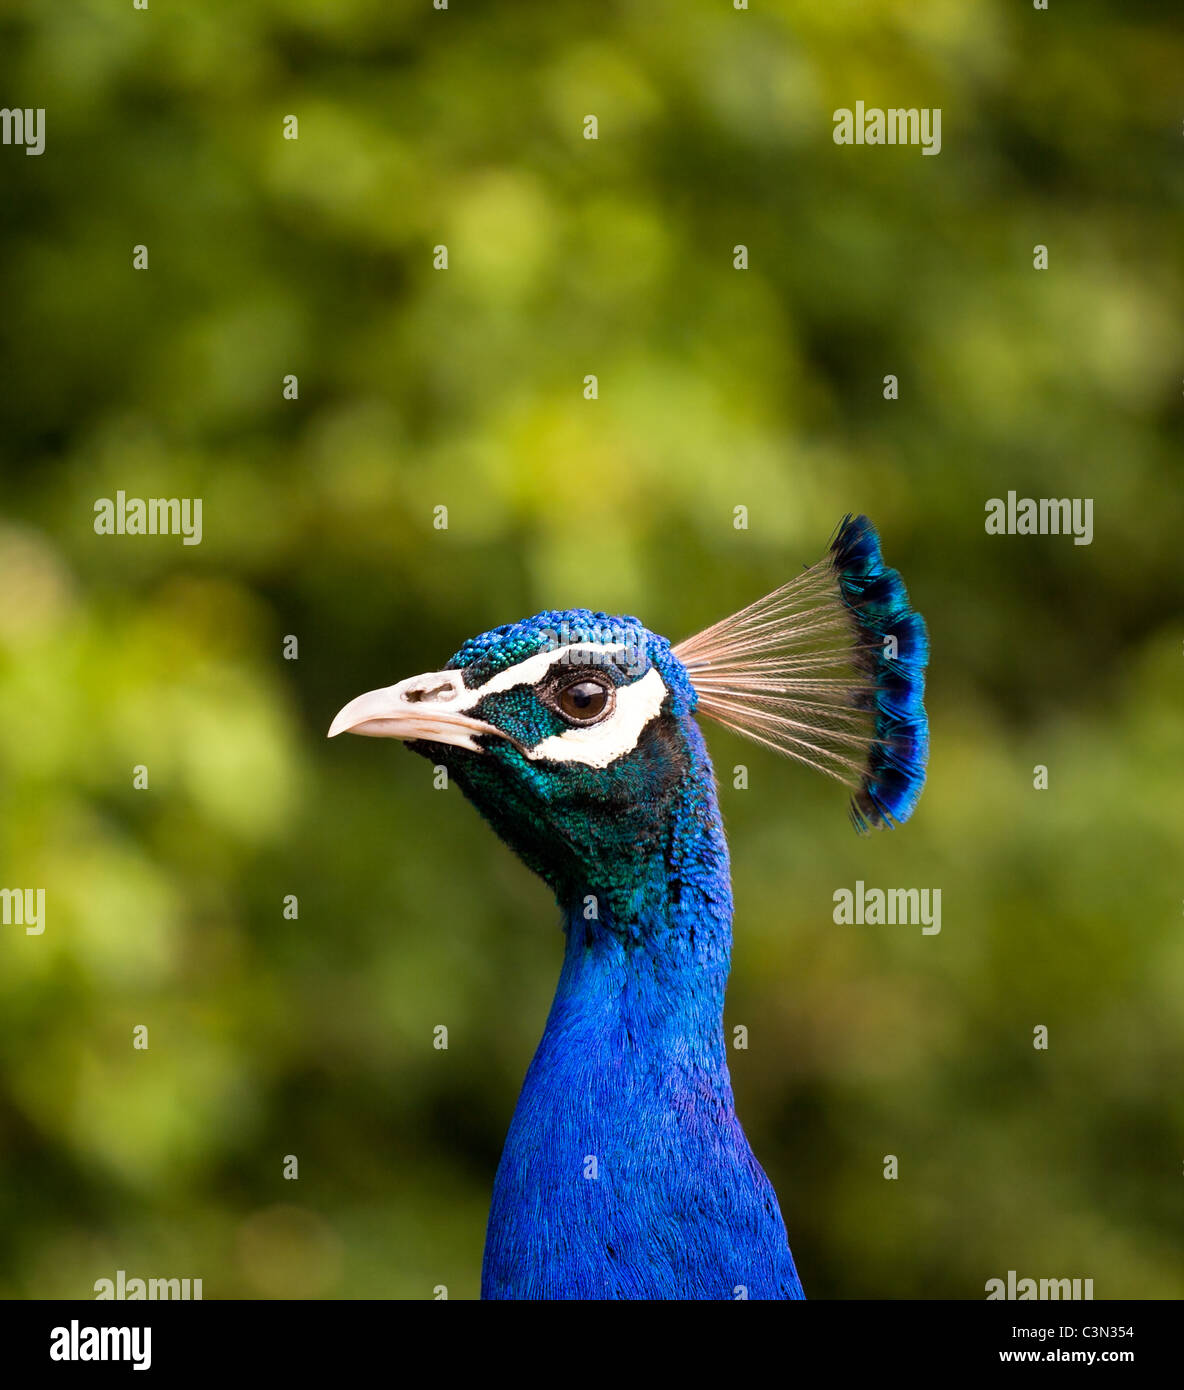 Vista de perfil de un pavo real centrado en el ave con un fondo borroso Foto de stock